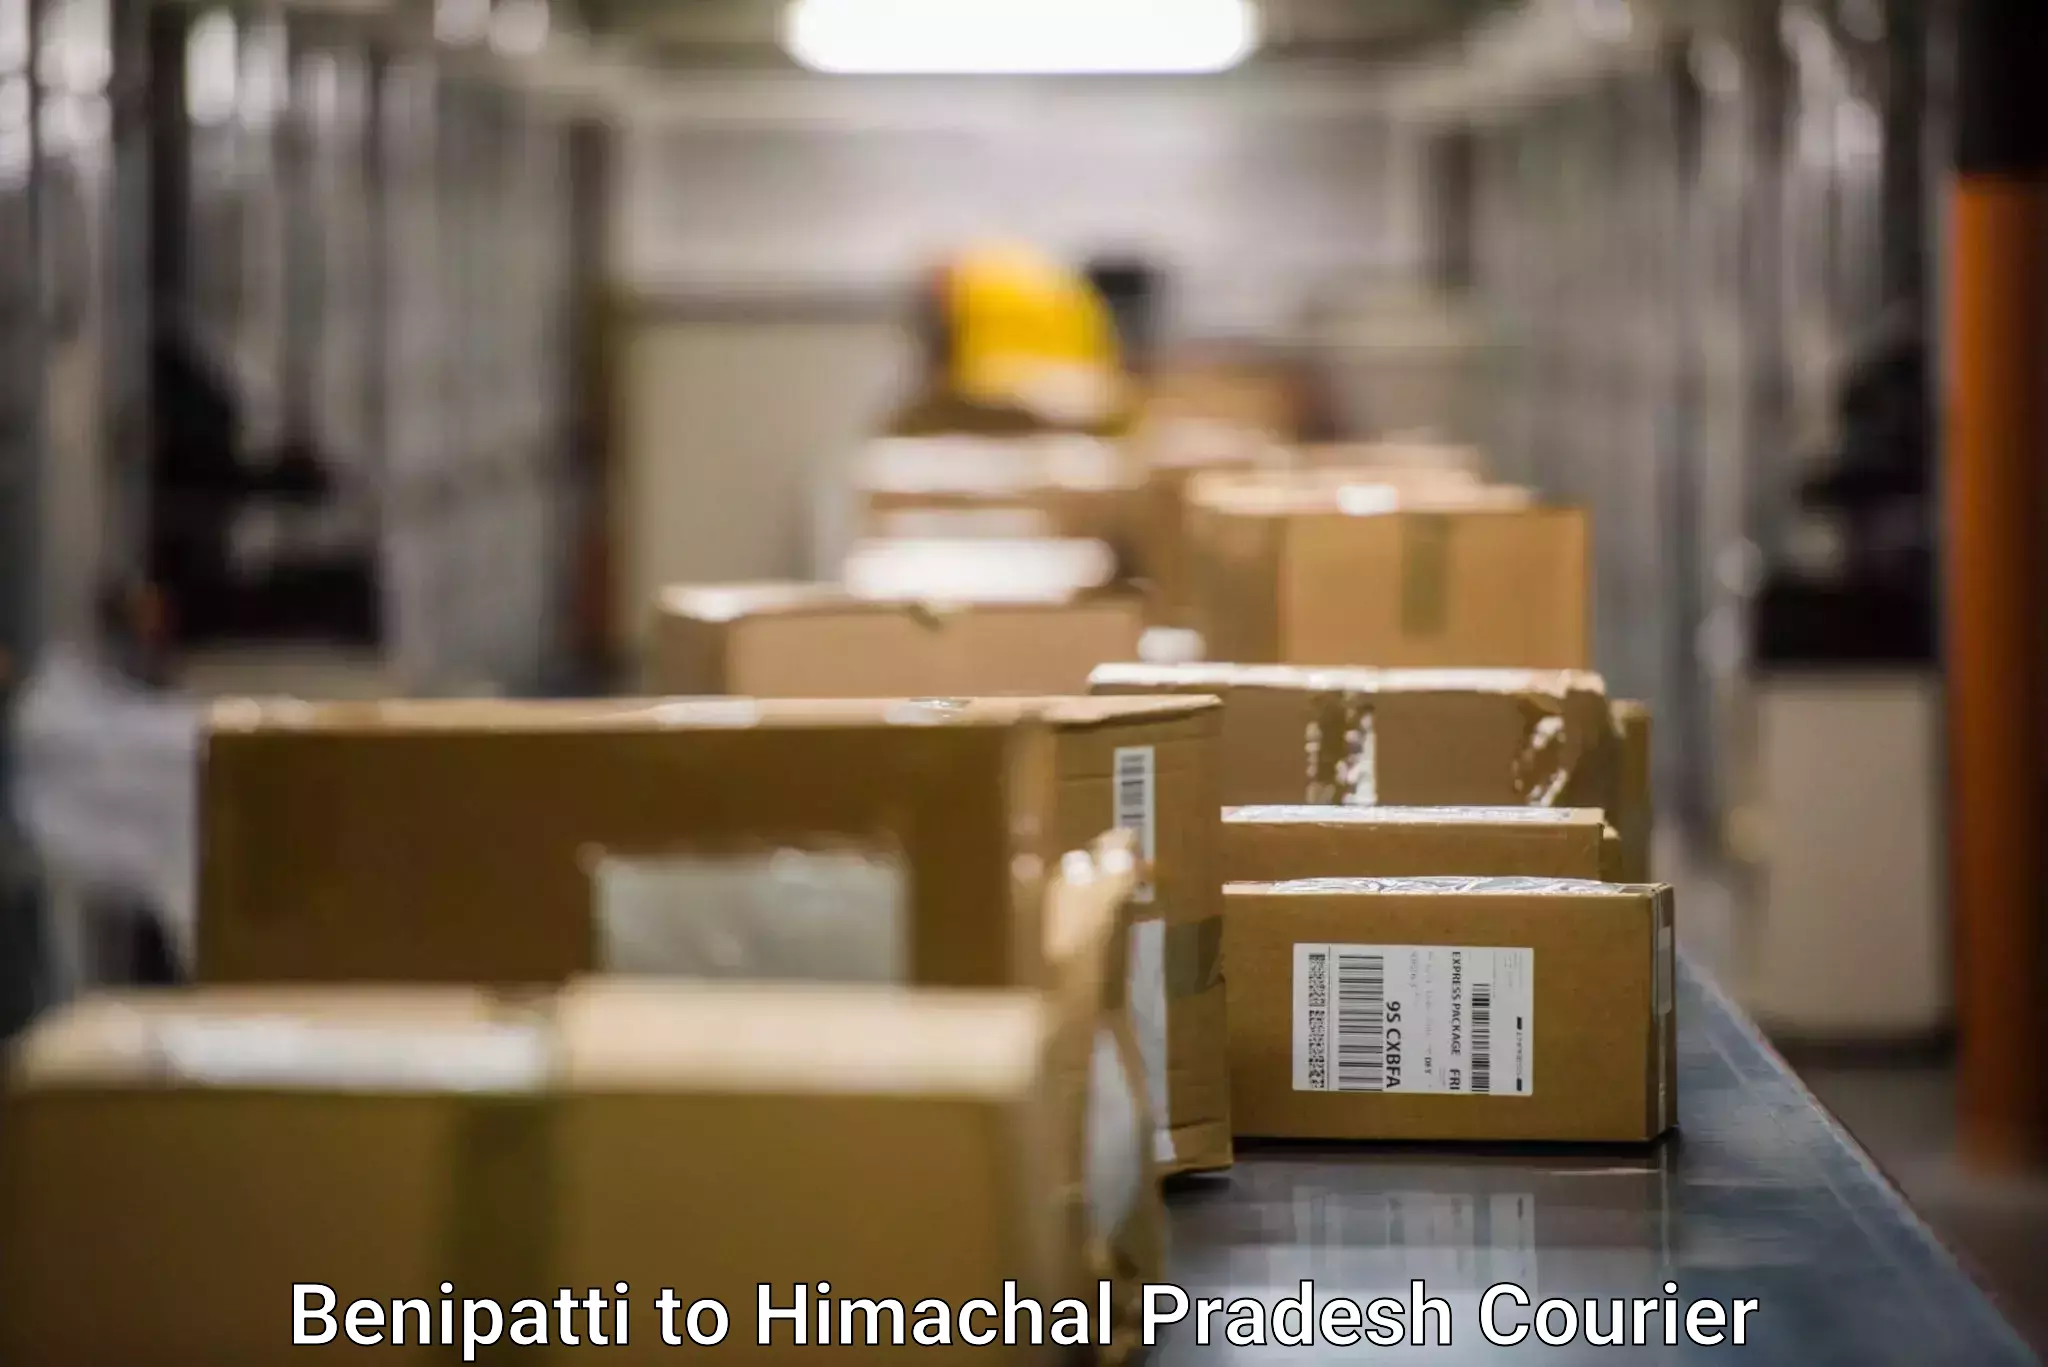 Fast-track shipping solutions Benipatti to Jukhala